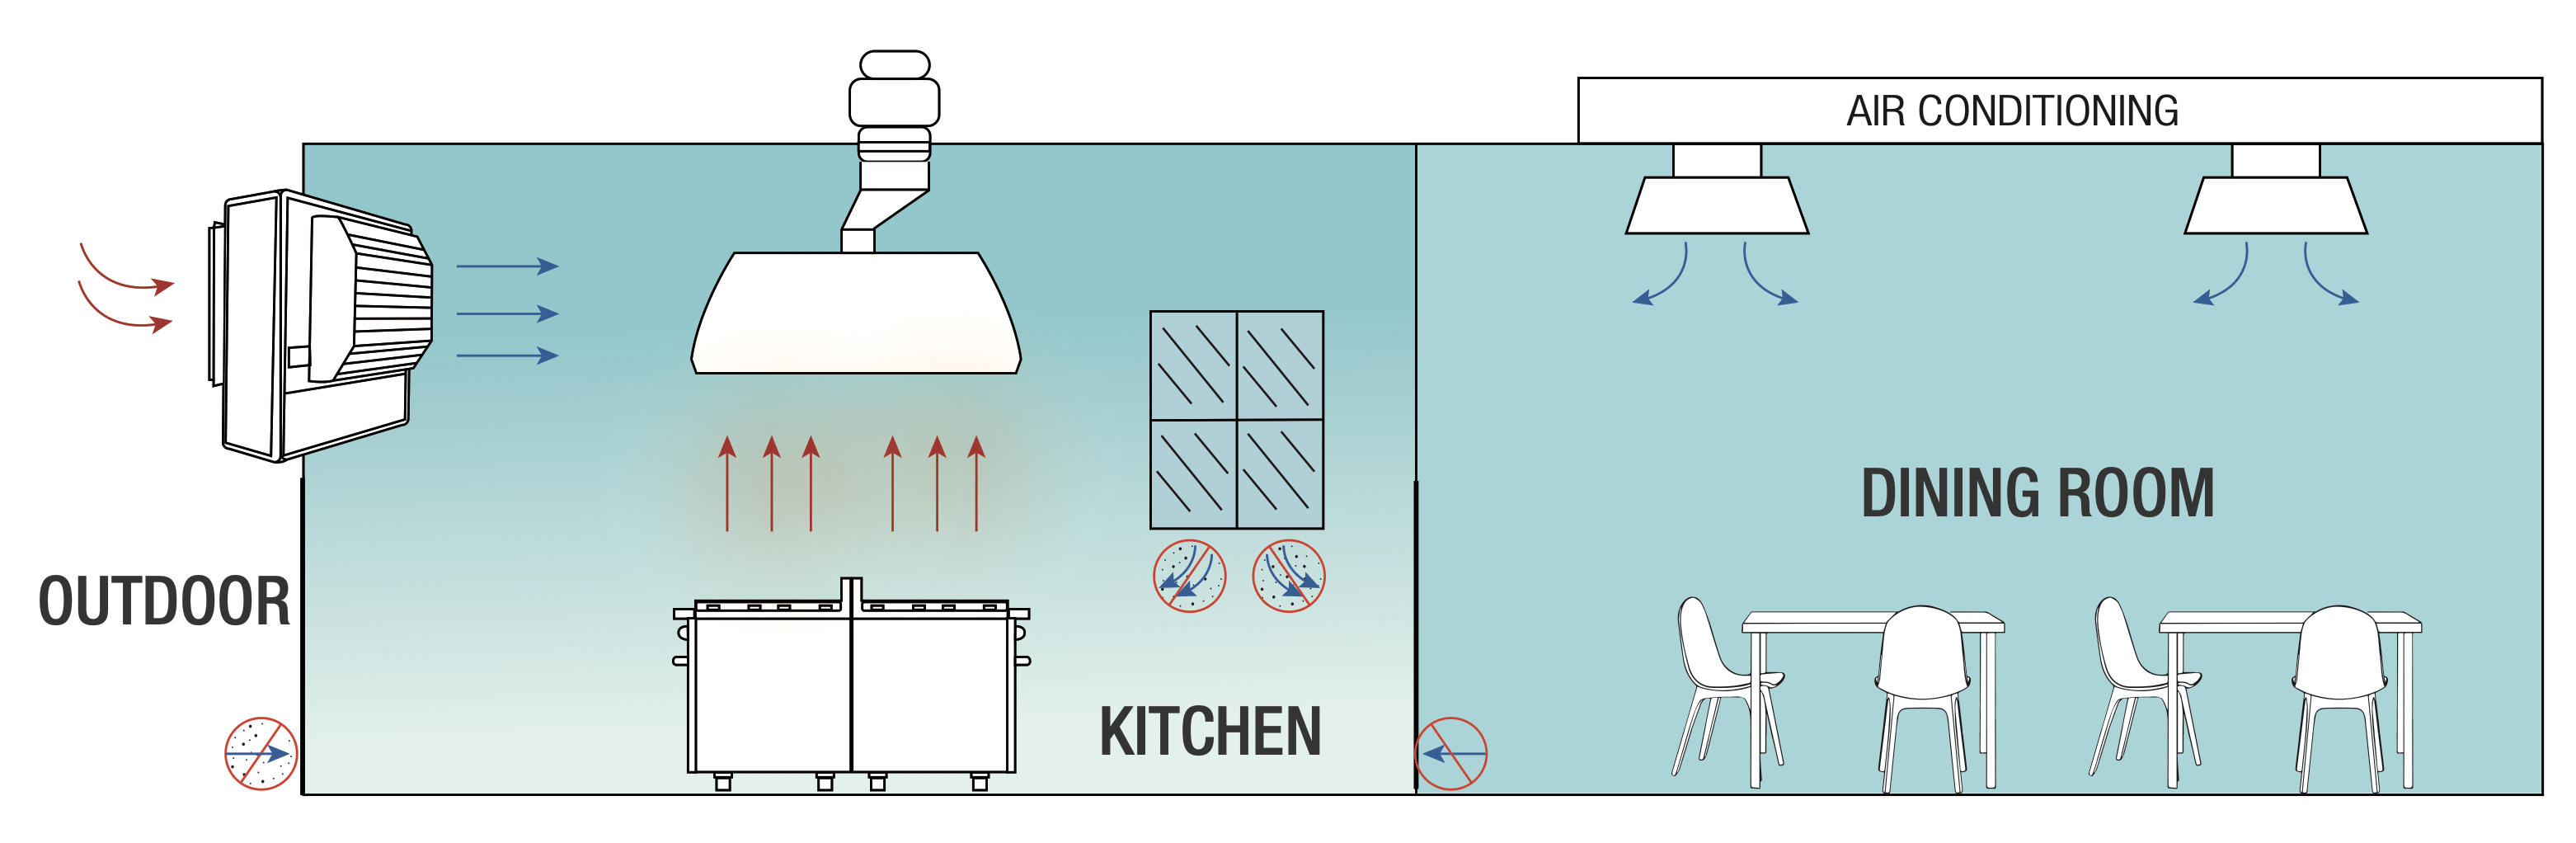 klimatyzacja i wentylacja ewaporacyjna w kuchni i restauracji